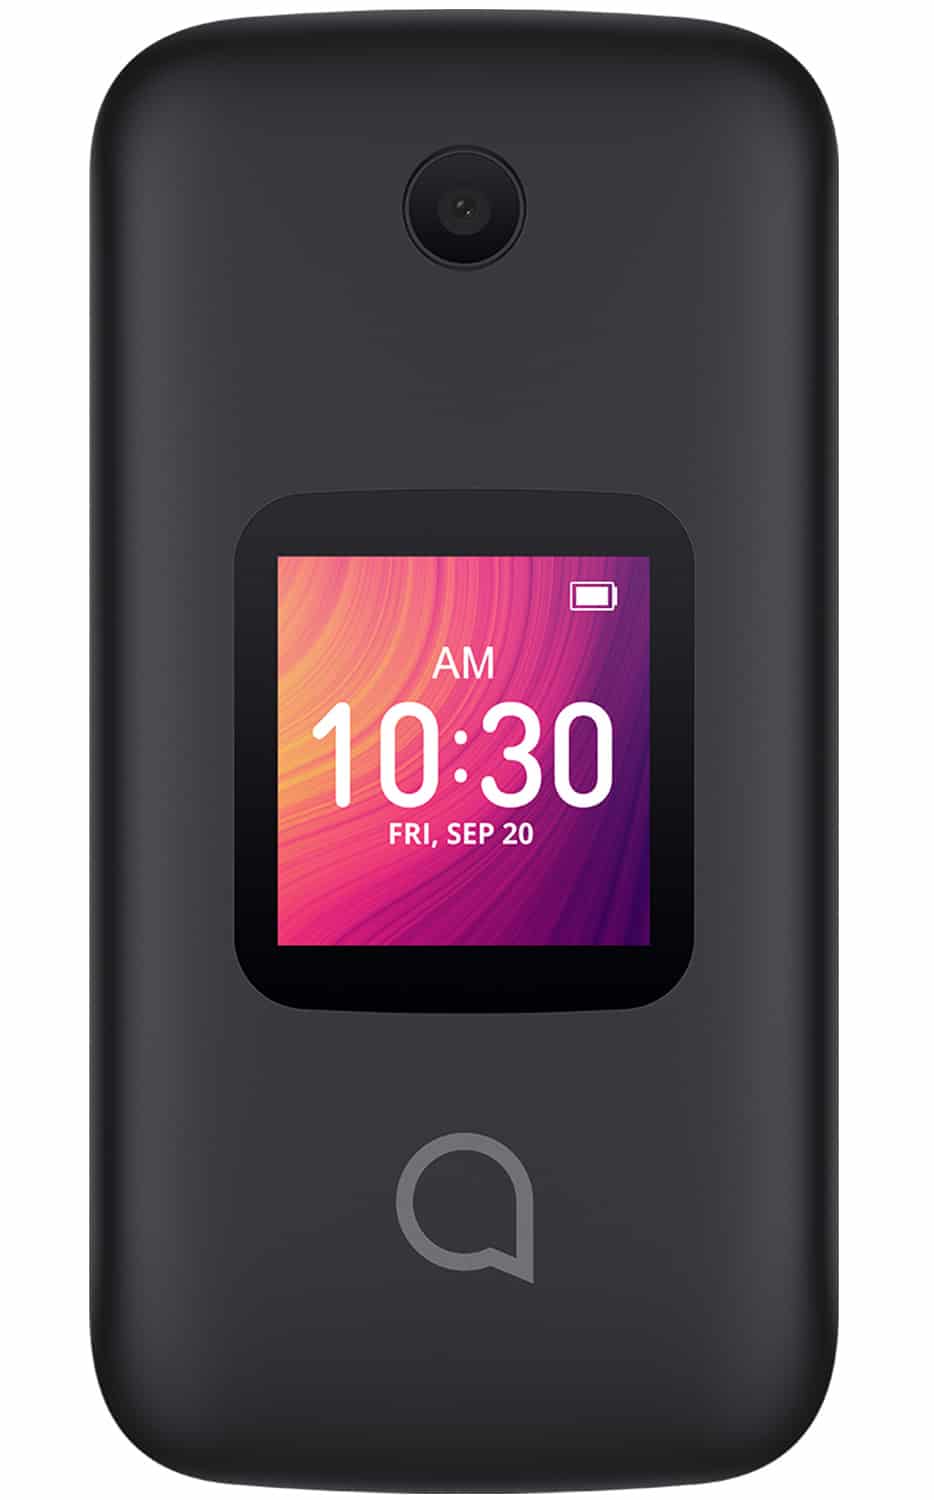 Flip Phone for Elderly – Cell Phone for Seniors –SOS Emergency Assist.